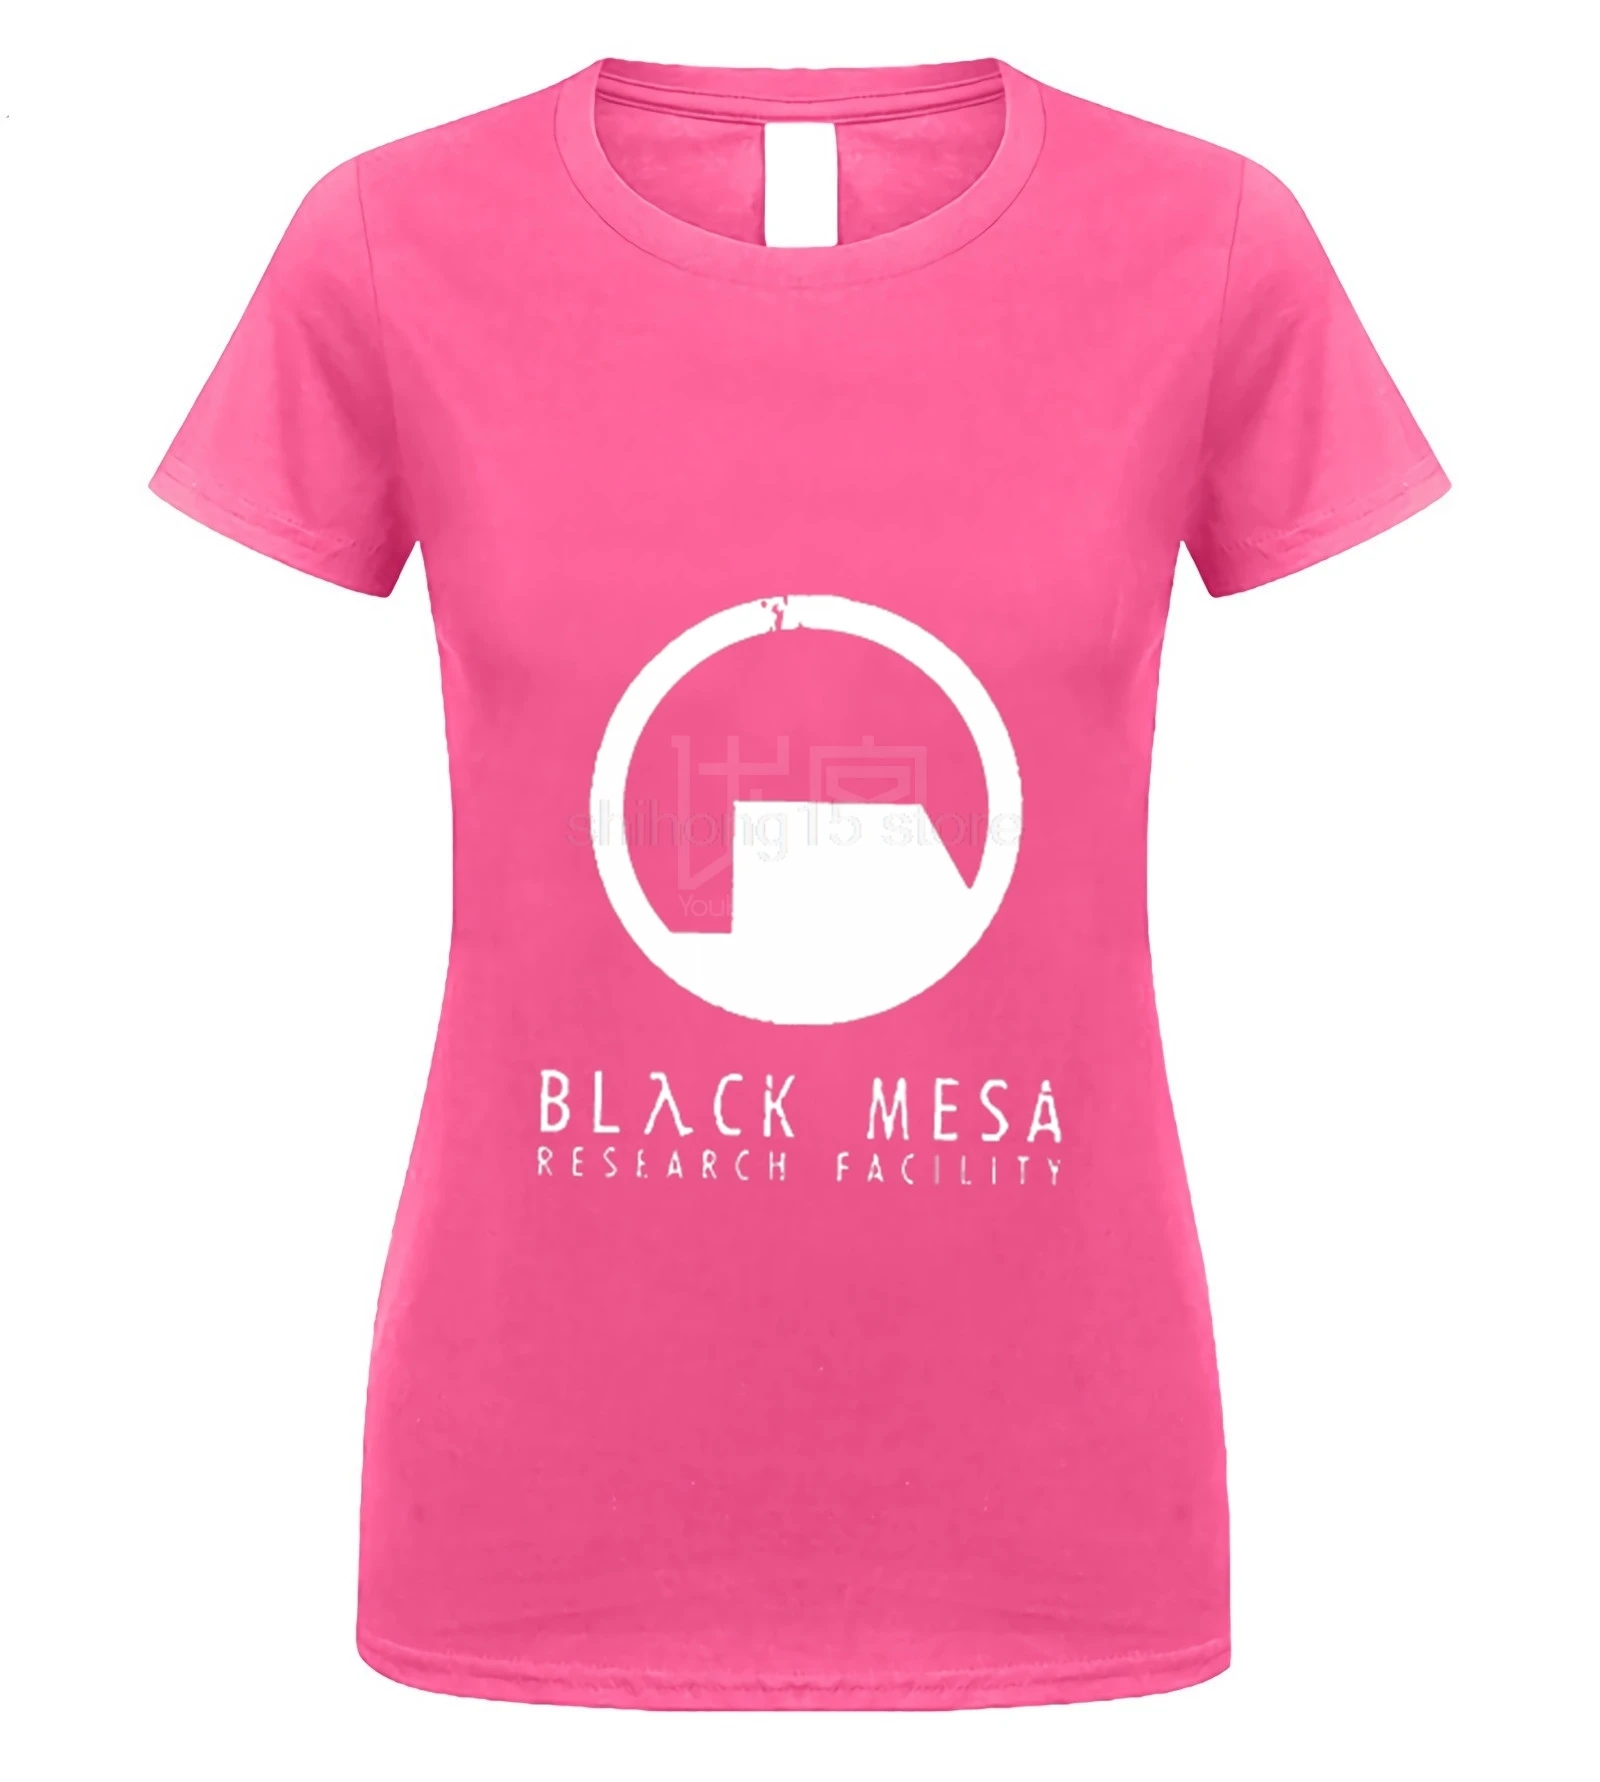 Black Mesa Half Life Футболка мужская крутая футболка европейские размеры-XXXL топы летние футболки хлопковая Футболка с круглым вырезом - Цвет: women pink